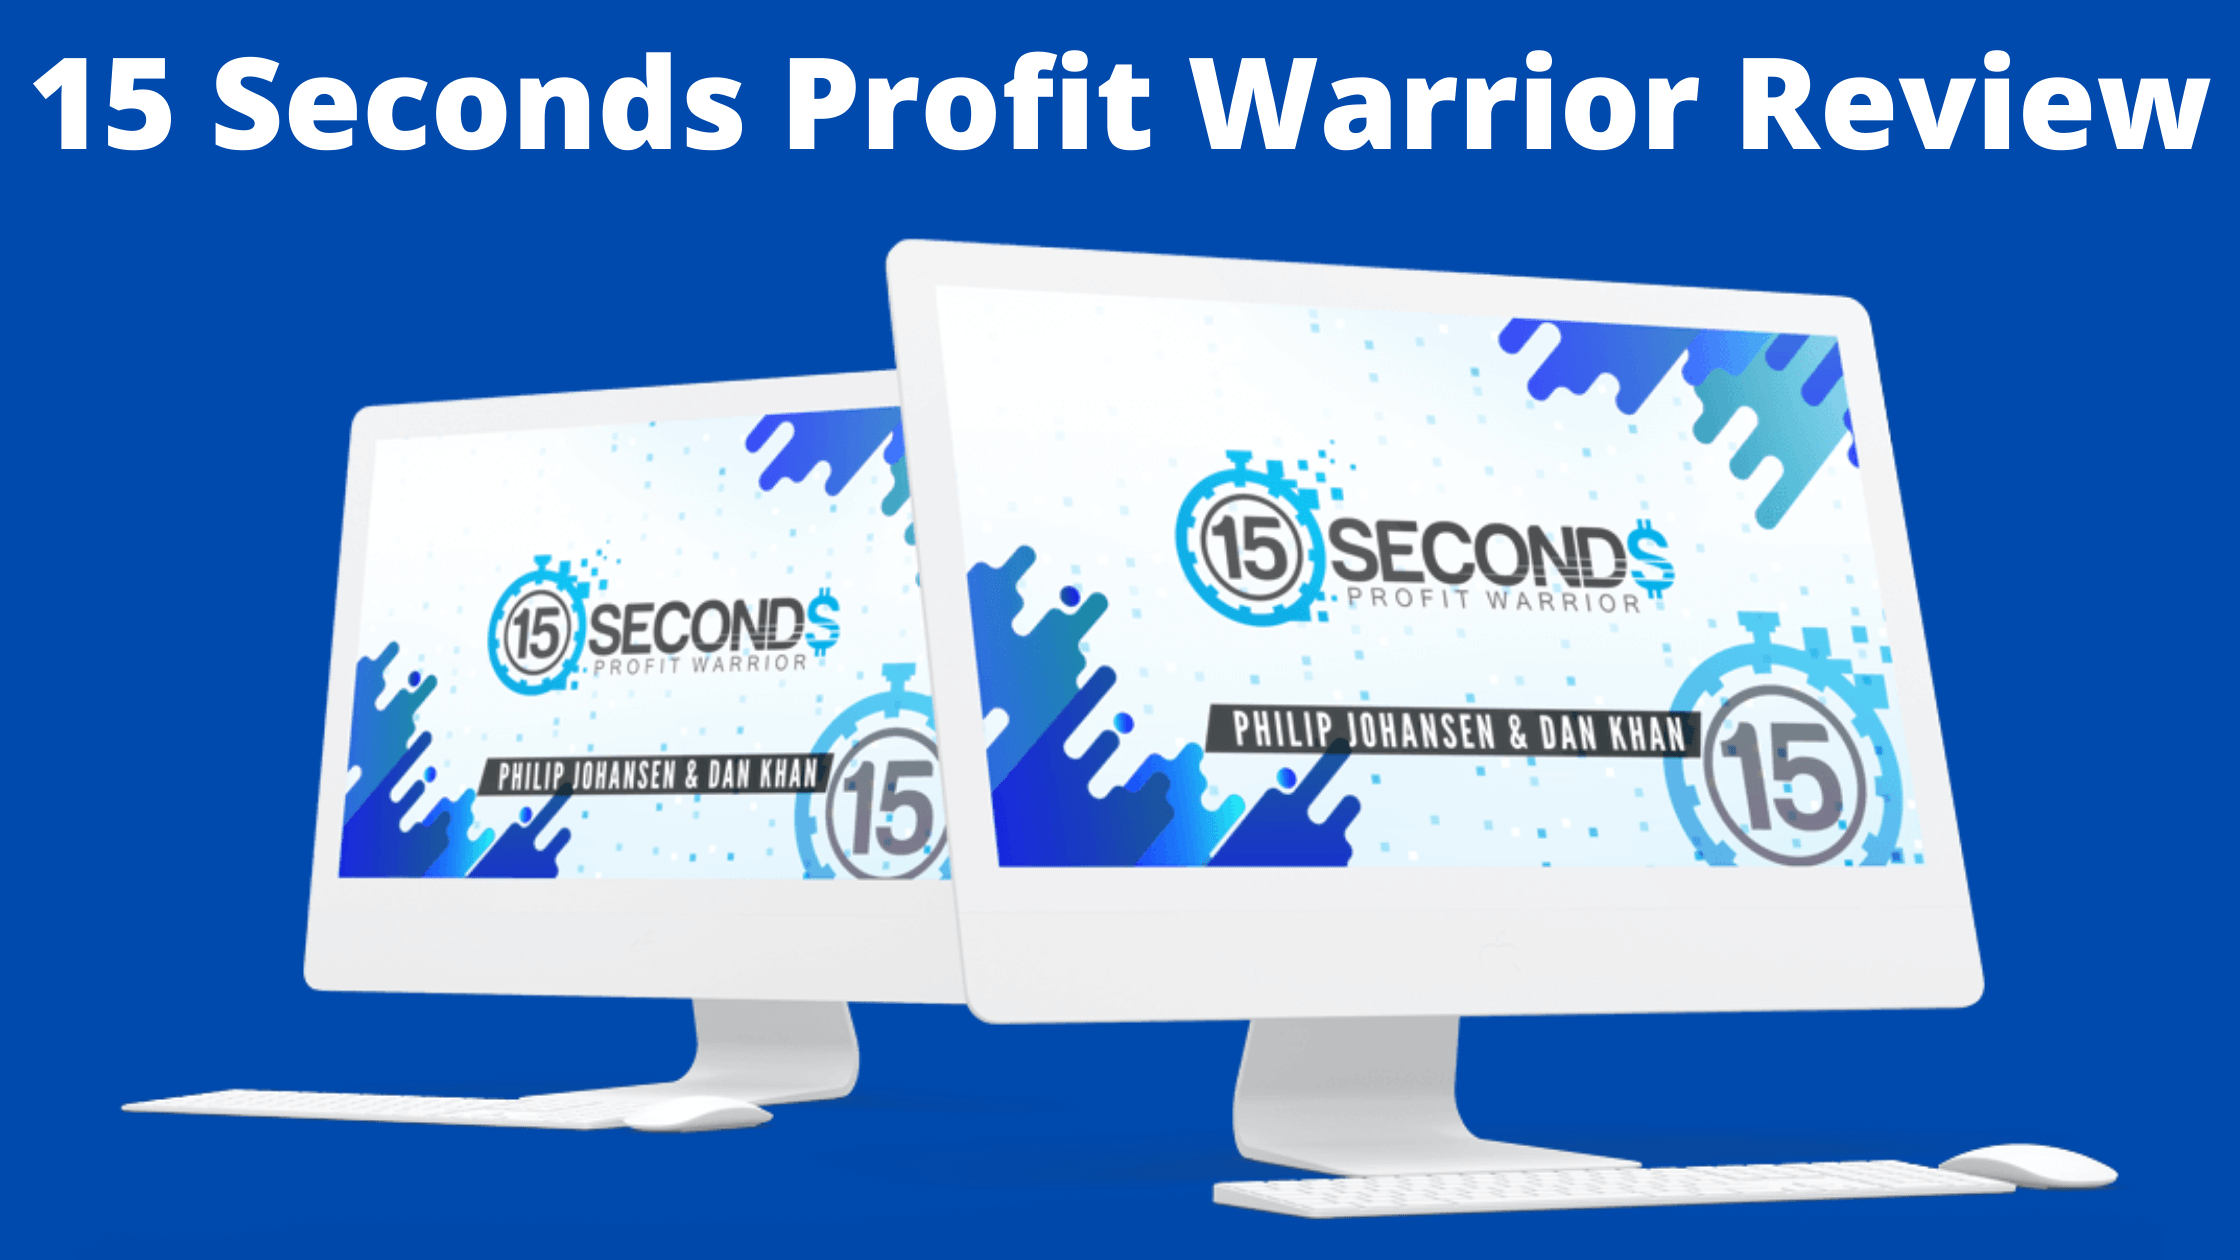 15 Seconds Profit Warrior Review